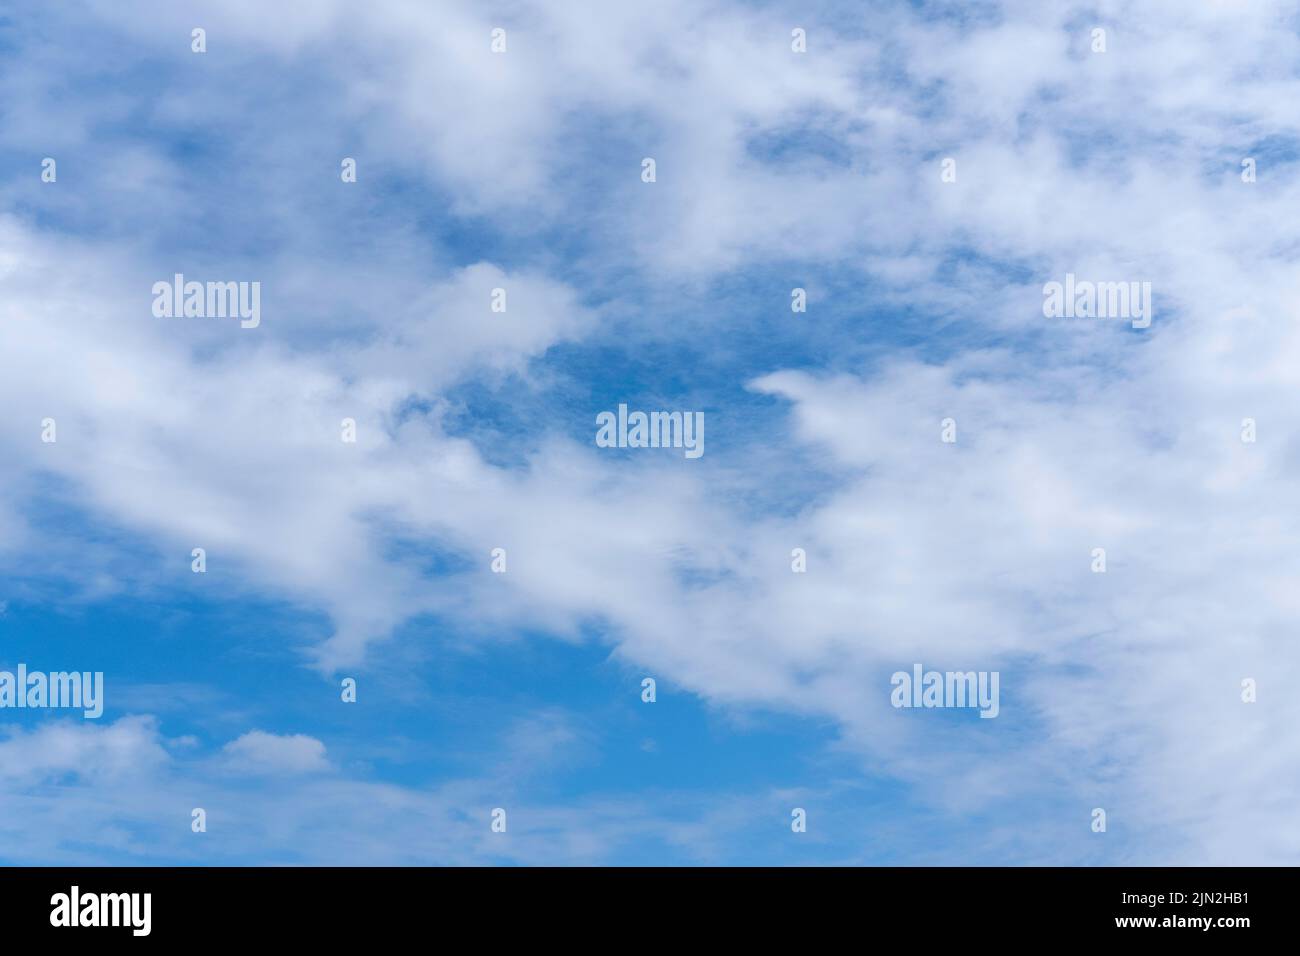 Fondo azul cielo con nubes cúmulos blancas esponjosas. Panorama de nubes blancas y esponjosas en el cielo azul. Hermoso y vasto cielo azul con sorprendente dispersión Foto de stock